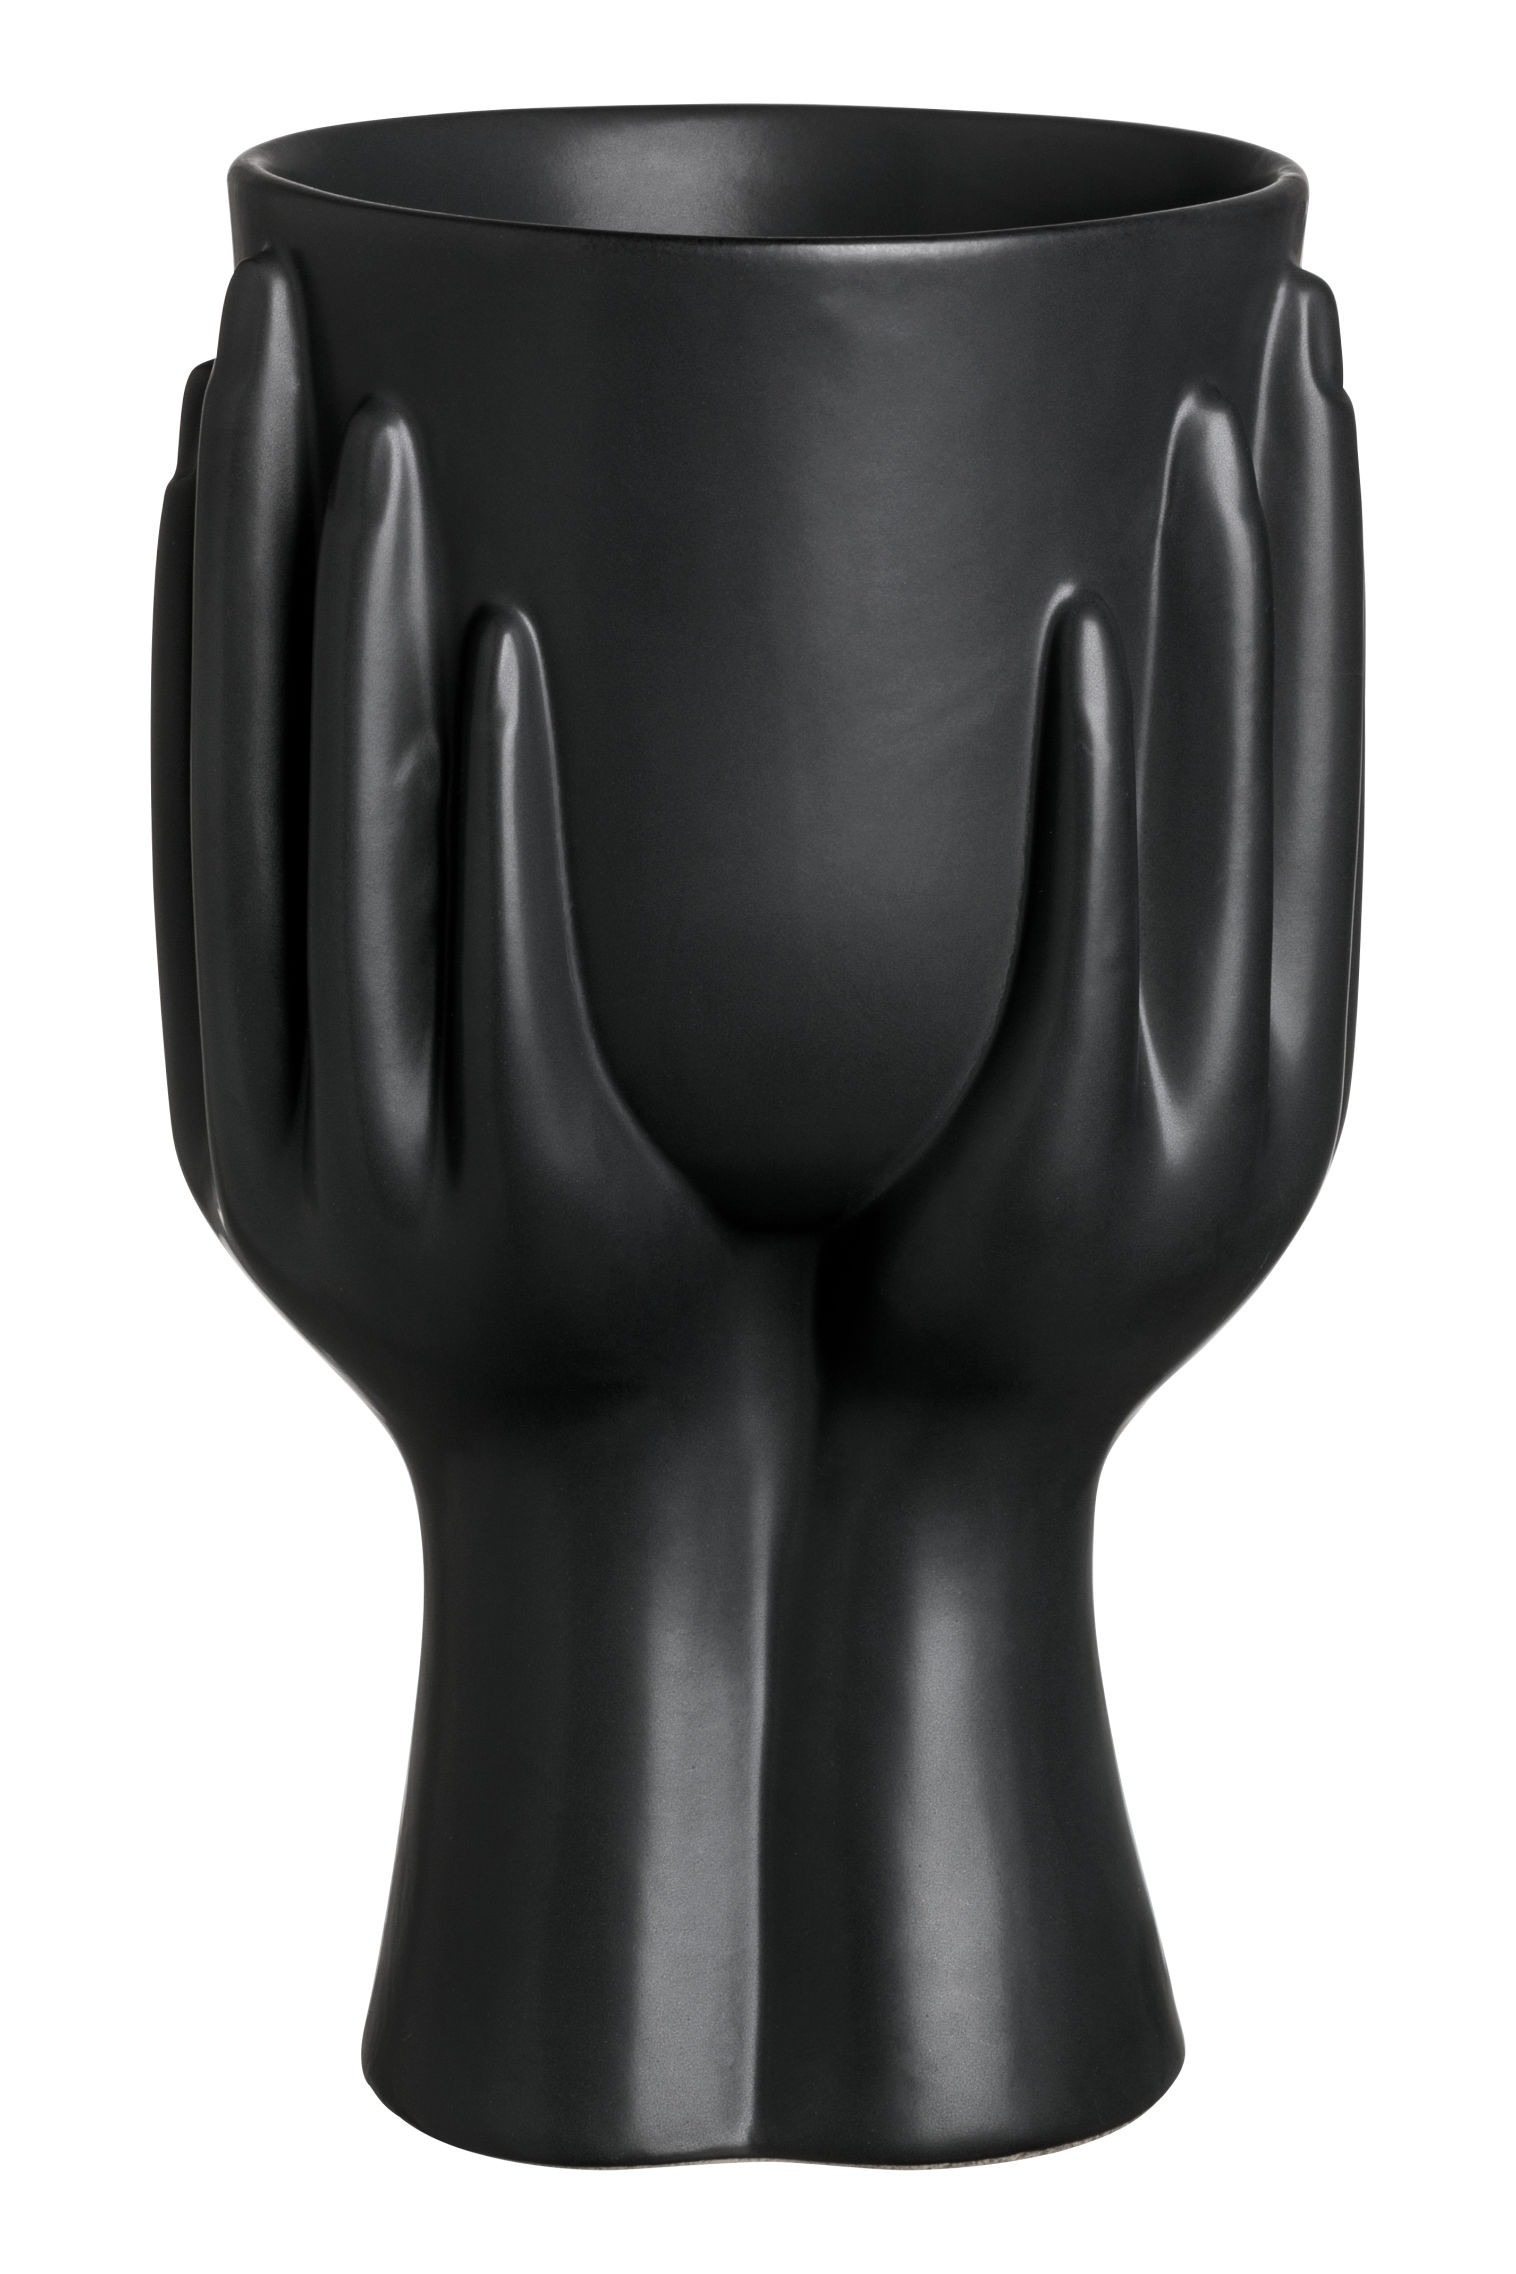 15 Fantastic Black Plastic Vase 2024 free download black plastic vase of stoneware vase black hm us in hmgoepprod